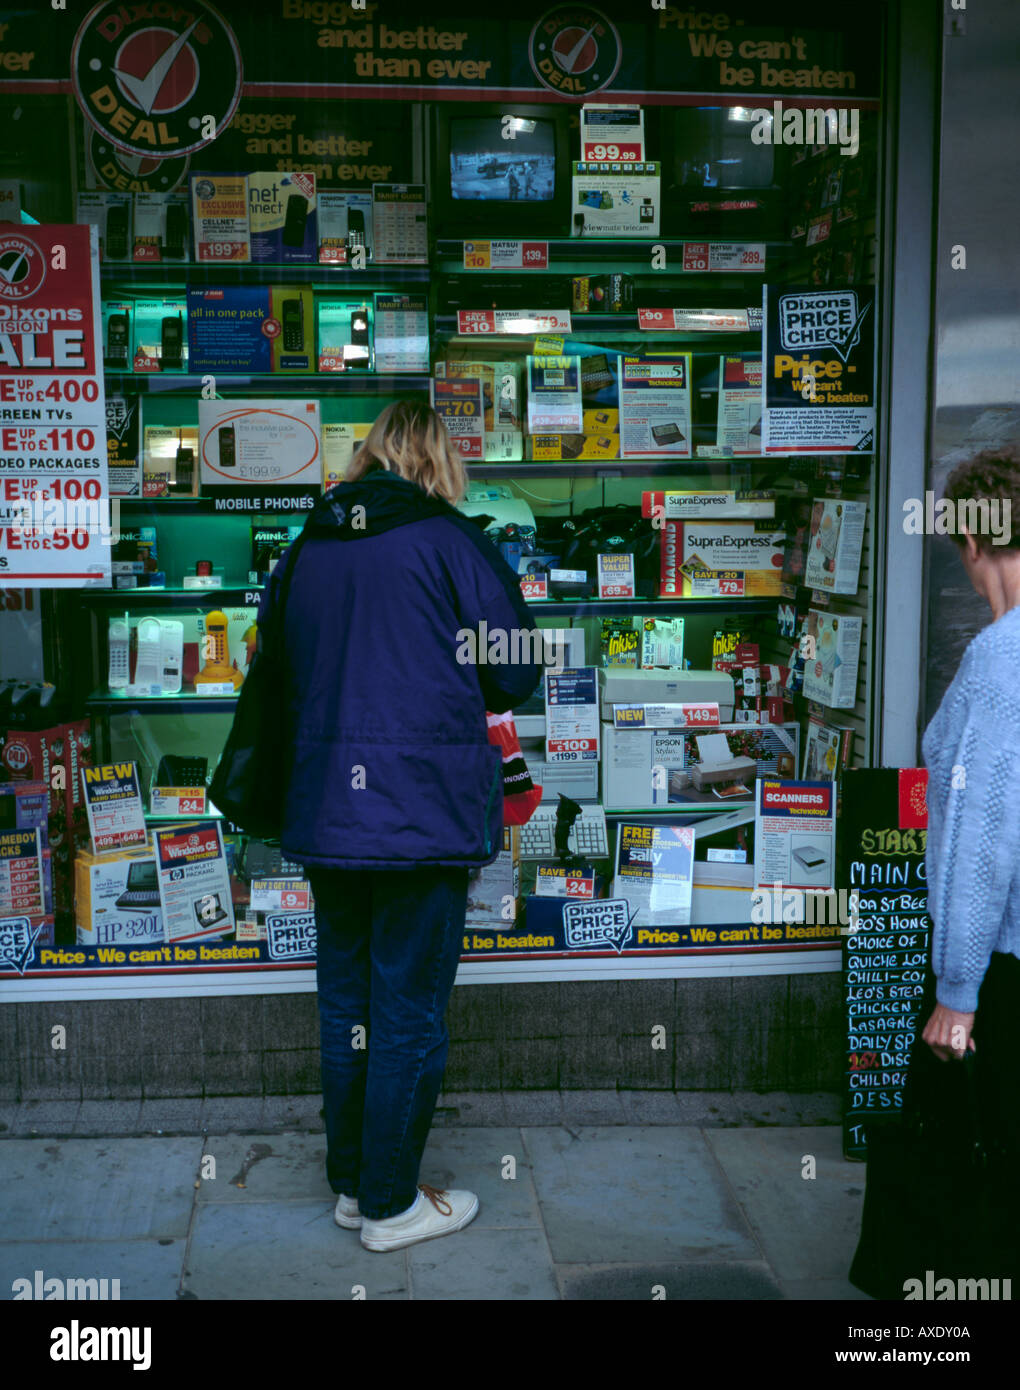 Frau an einem Schaufenster voller elektrischer Verbraucher Waren zum Verkauf suchen, Newcastle upon Tyne, Tyne and Wear, England, UK. Stockfoto